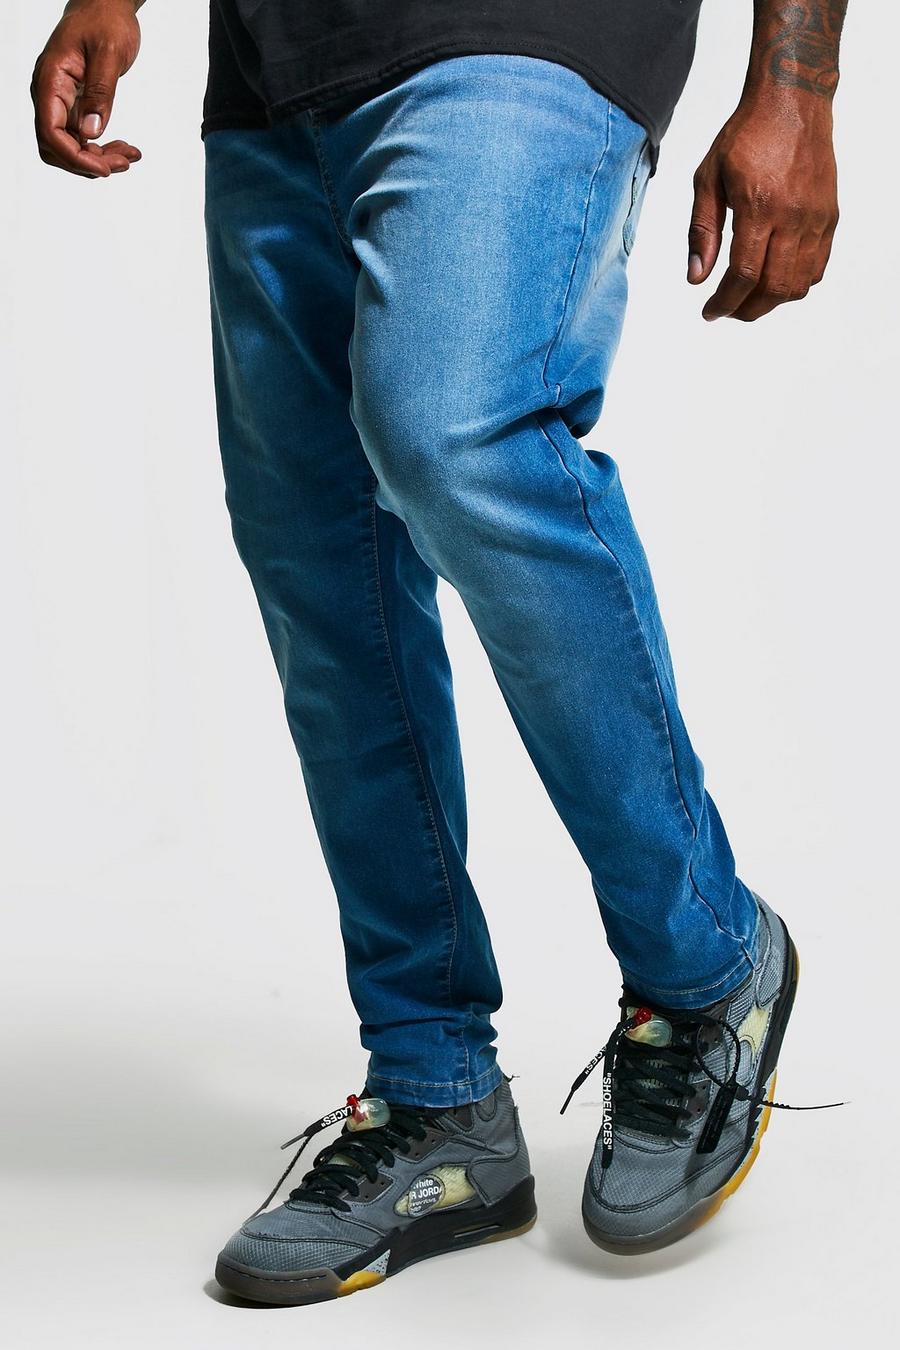 כחול בהיר azzurro סופר סקיני ג'ינס בשילוב פוליאסטר ממוחזר, מידות גדולות